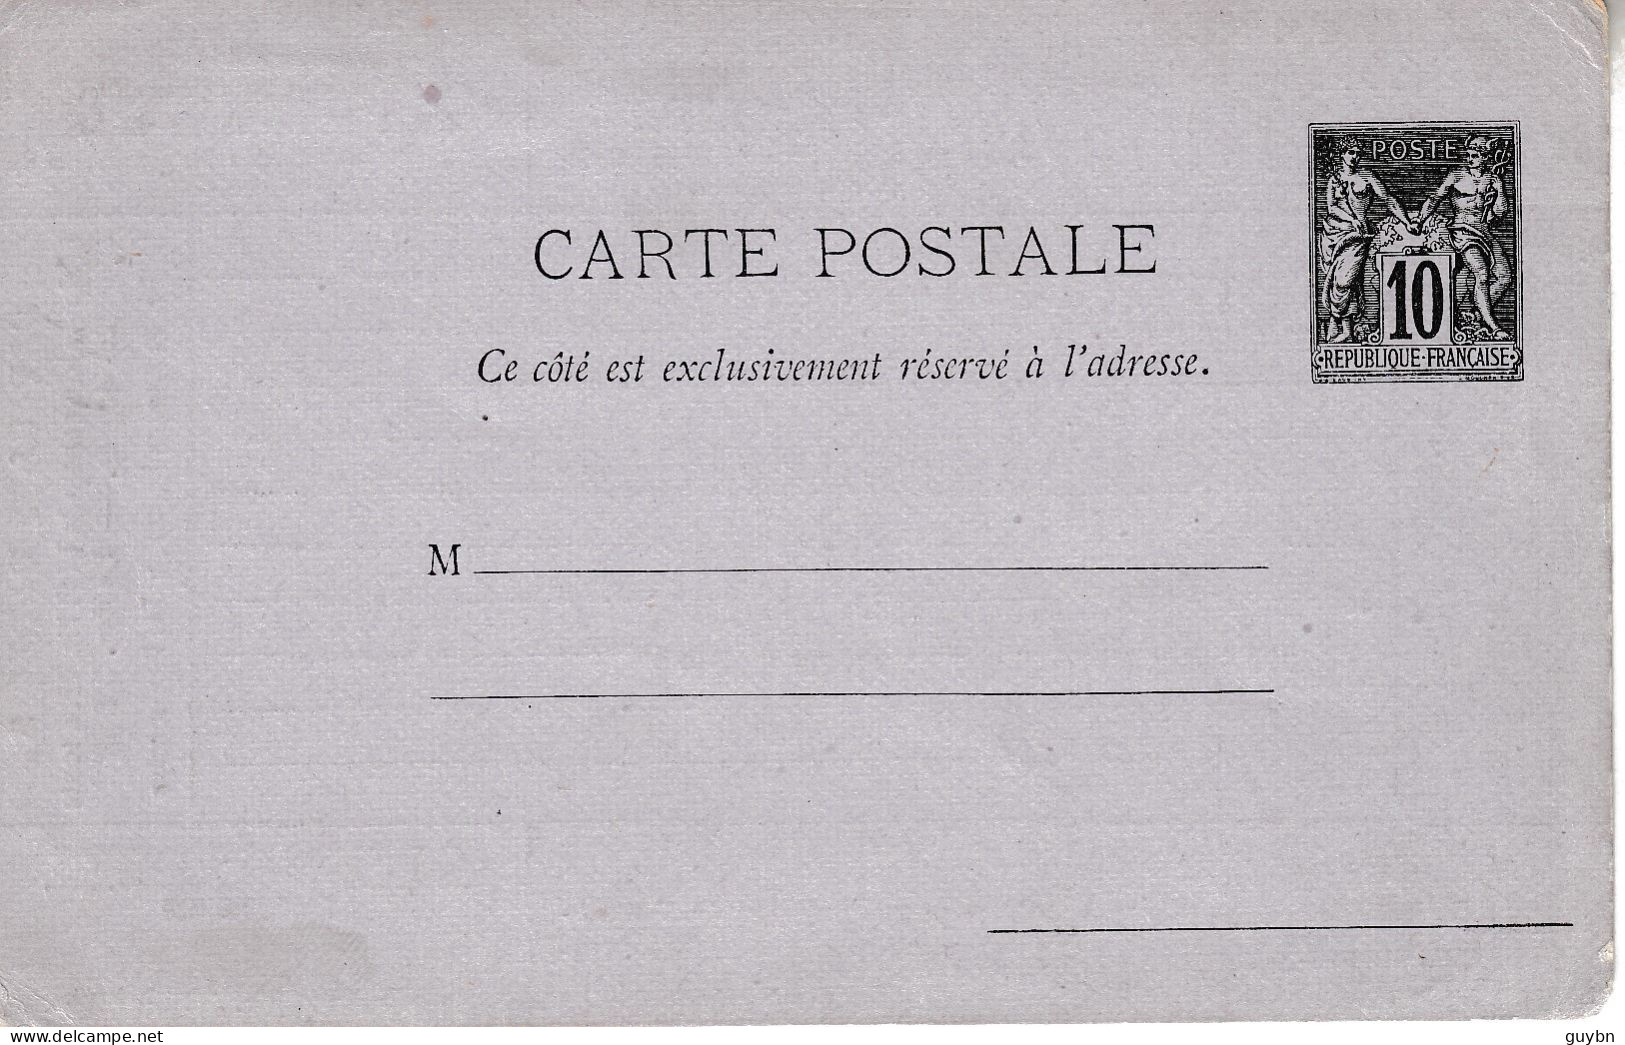 France Entier Cp Publicitaire Sage 10c Vendue 5 Centime .. Repiquage Annonces Pour Paris Sur Cp G05 .. NON REFERENCE .. - Standard Postcards & Stamped On Demand (before 1995)